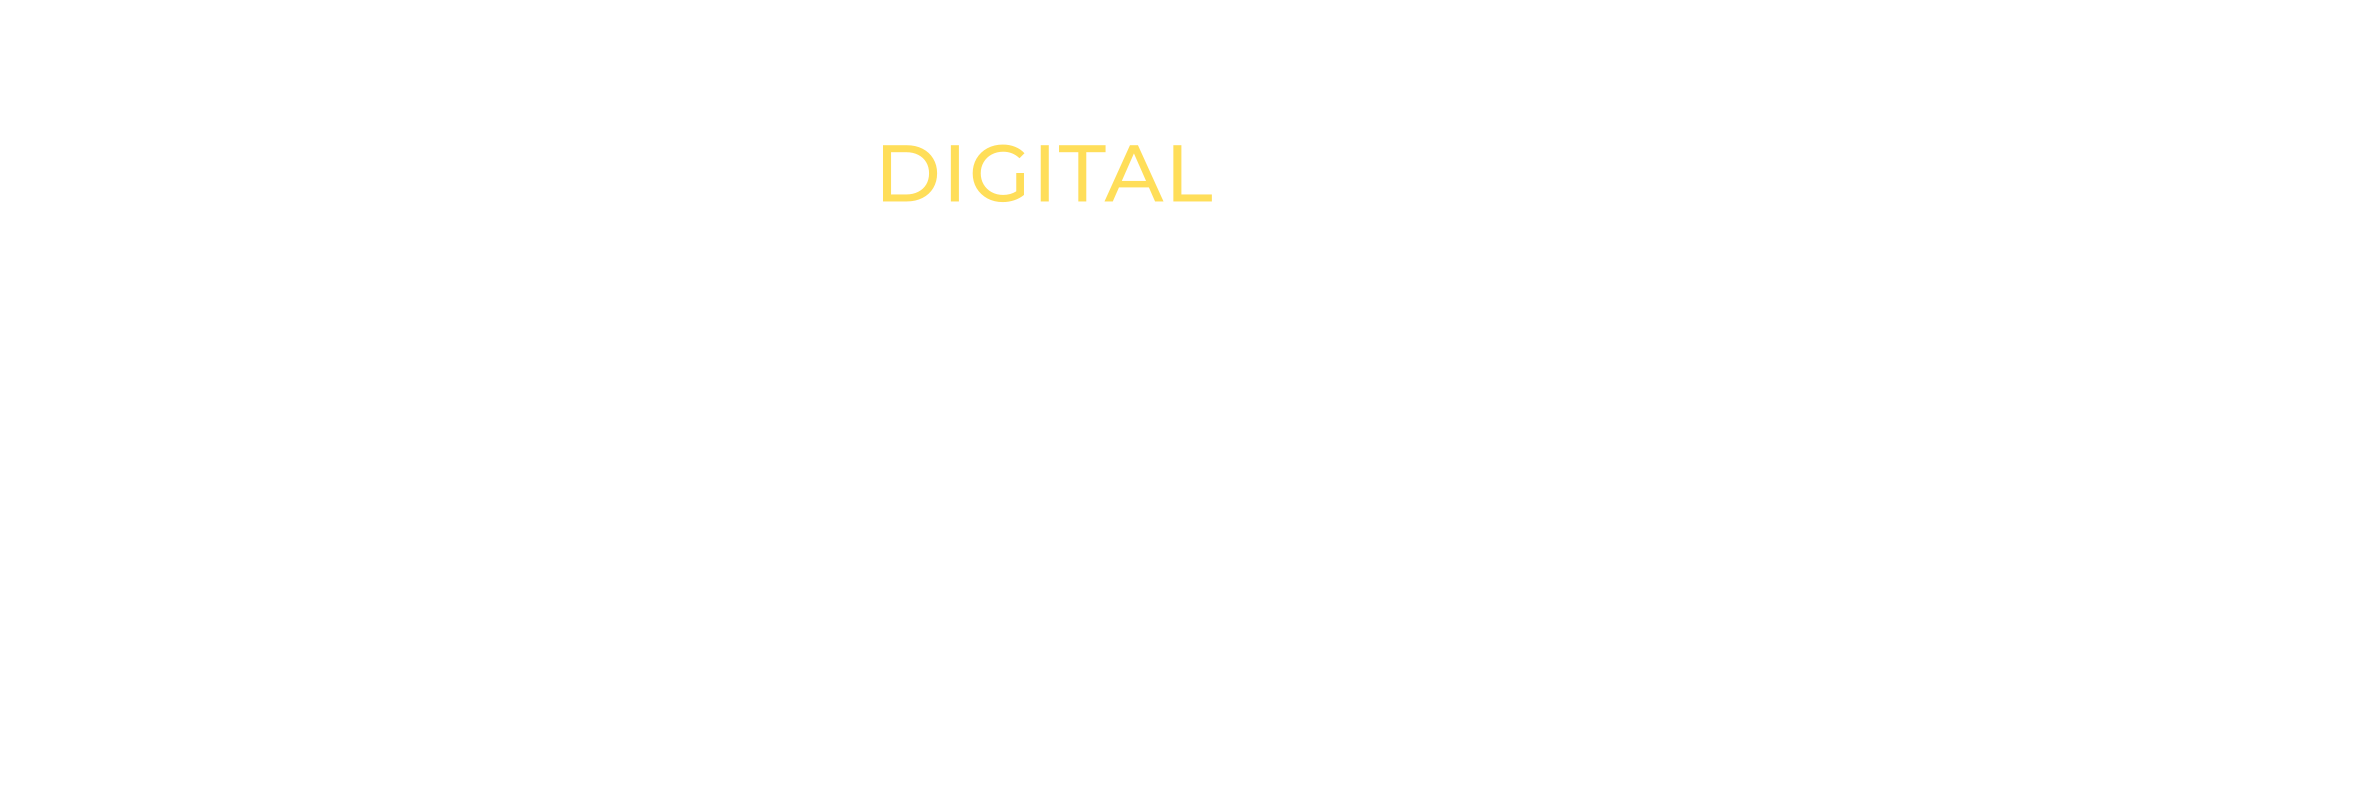 Dream Big Media